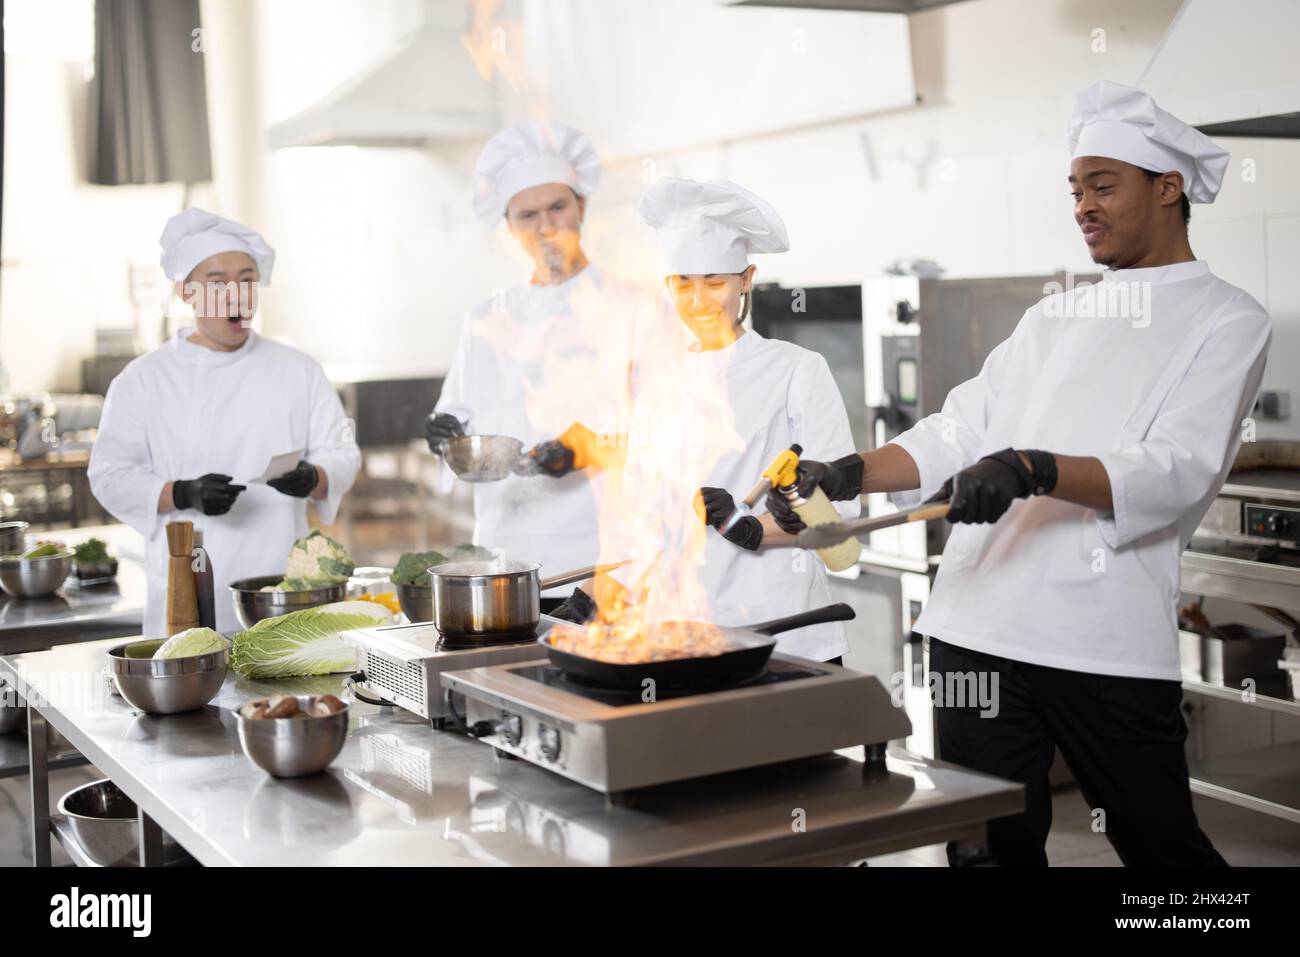 Multirassisches Team professioneller Köche in Uniform, die Mahlzeiten für ein Restaurant in der Küche zubereiten. Latein Burning Pan, europäische Köche machen Sauce und asiatischen Koch verwalten den Prozess. Teamarbeit und harter Job im Restaurant Stockfoto